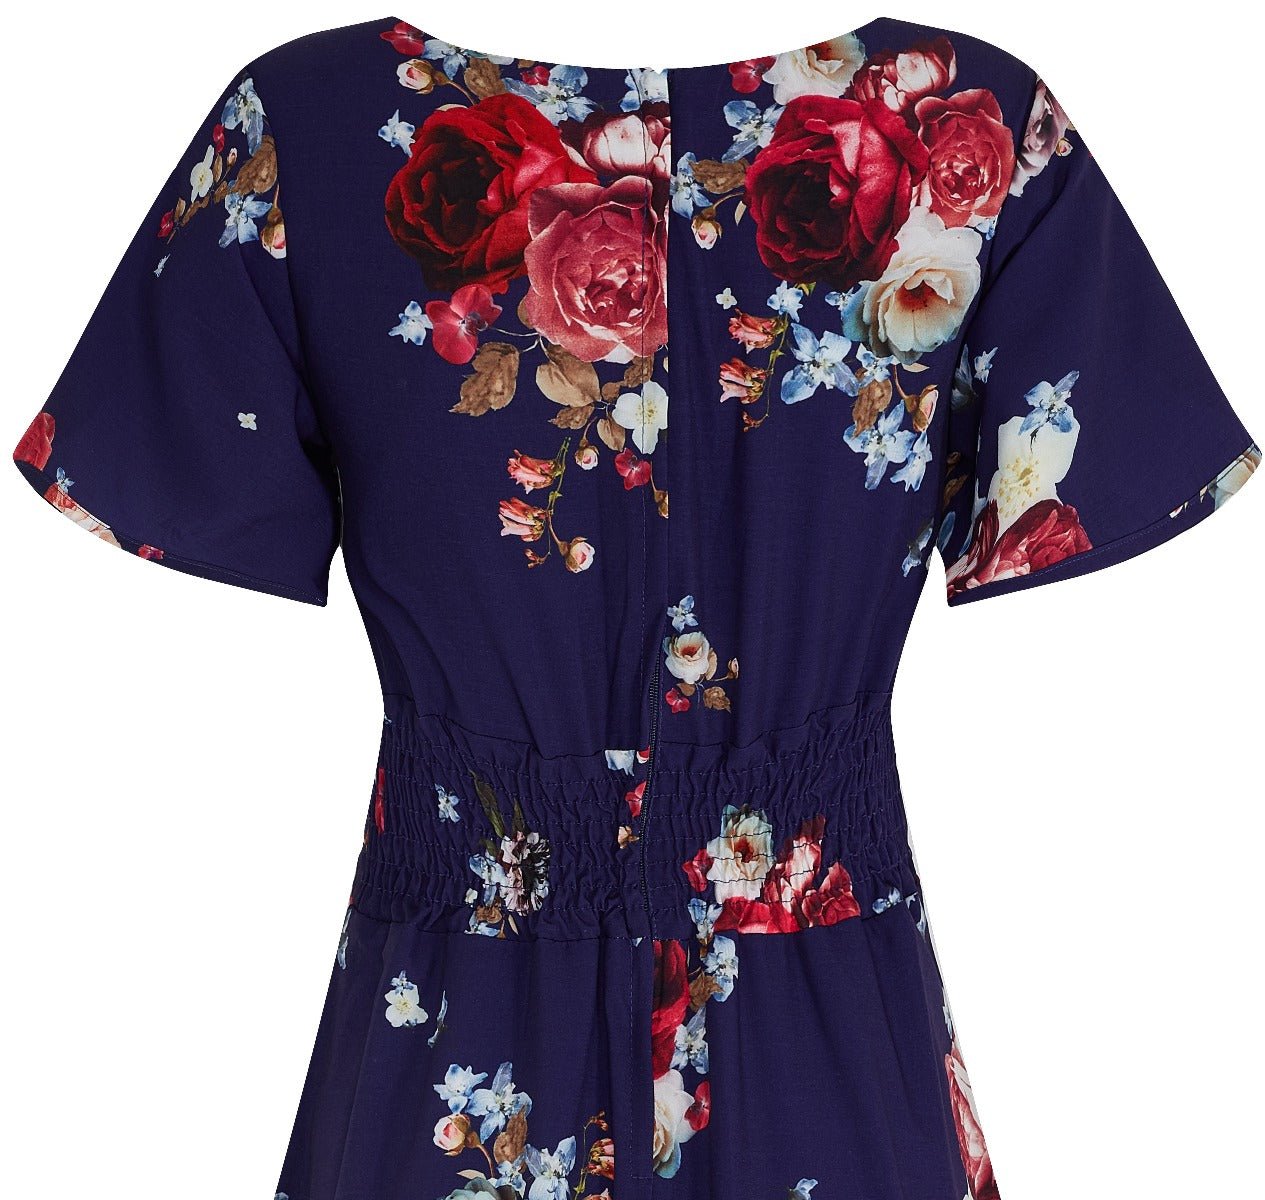 Janice V-neck Petal Sleeved Flared Dress - Navy Floral Rose Print